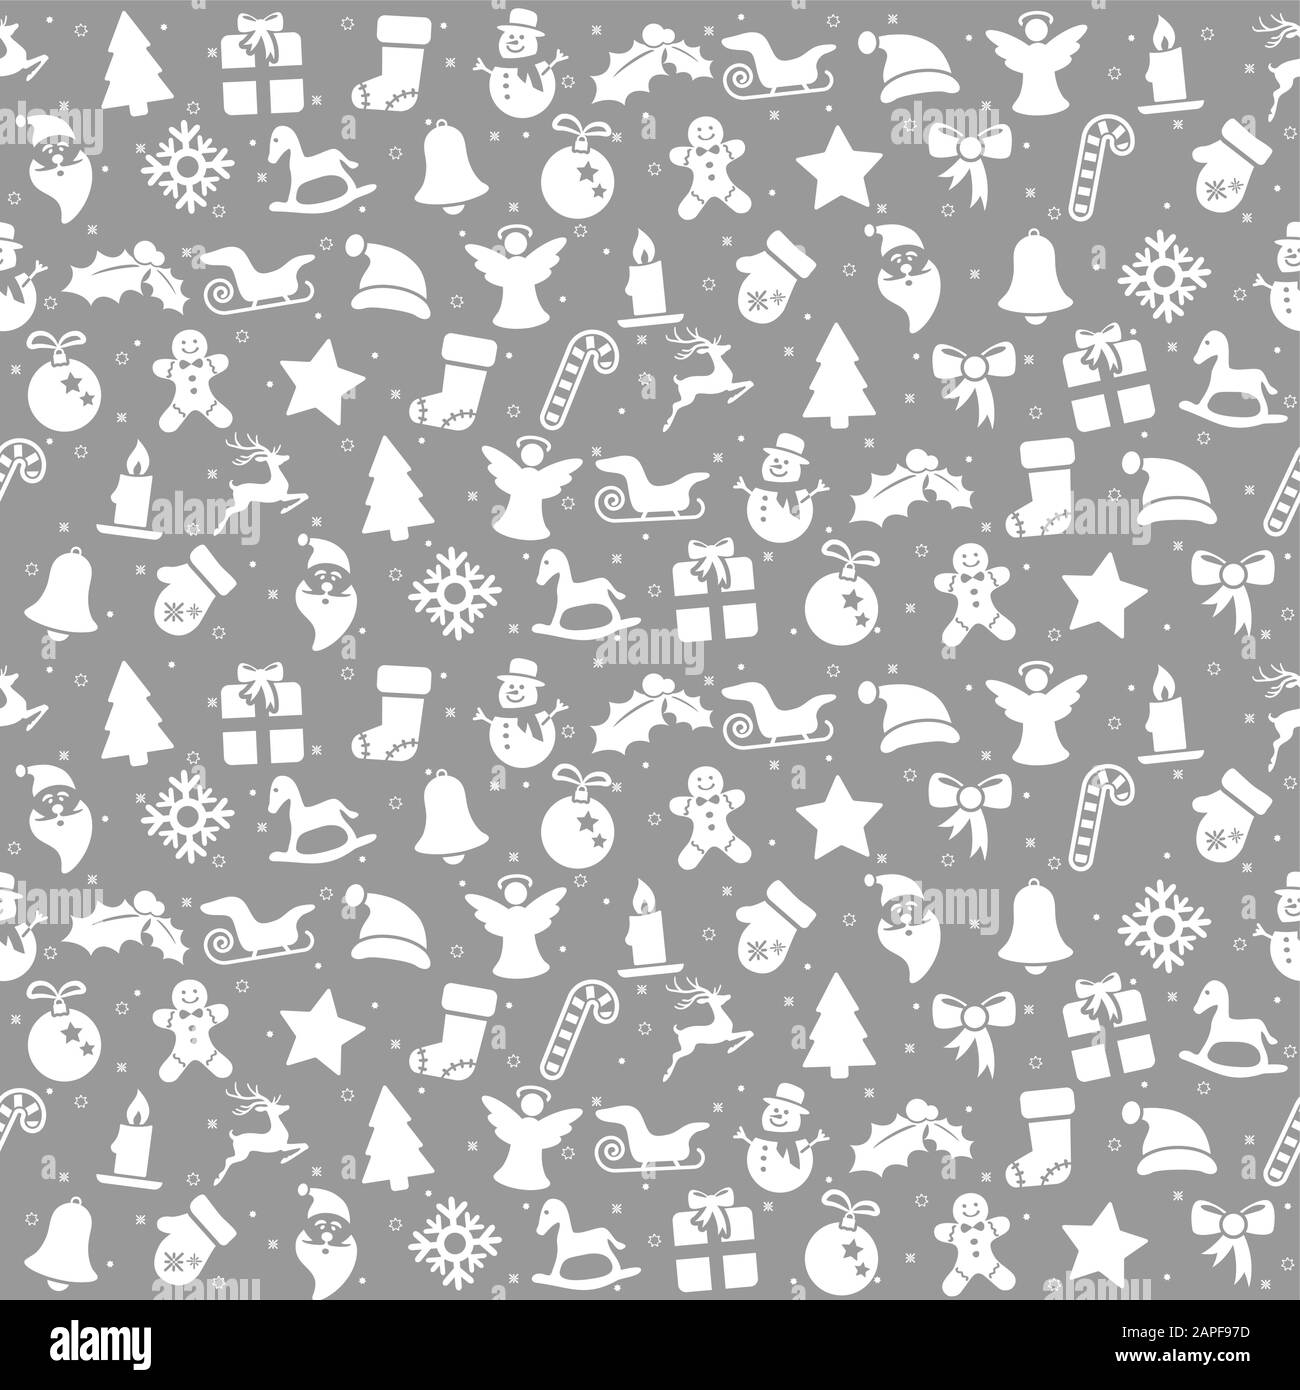 Noël arrière-plan transparent argent couleur se compose d'icônes de Noël typiques comme le père noël, bougie, snowfalke, arbre, Gingerbread Man, les étoiles Illustration de Vecteur